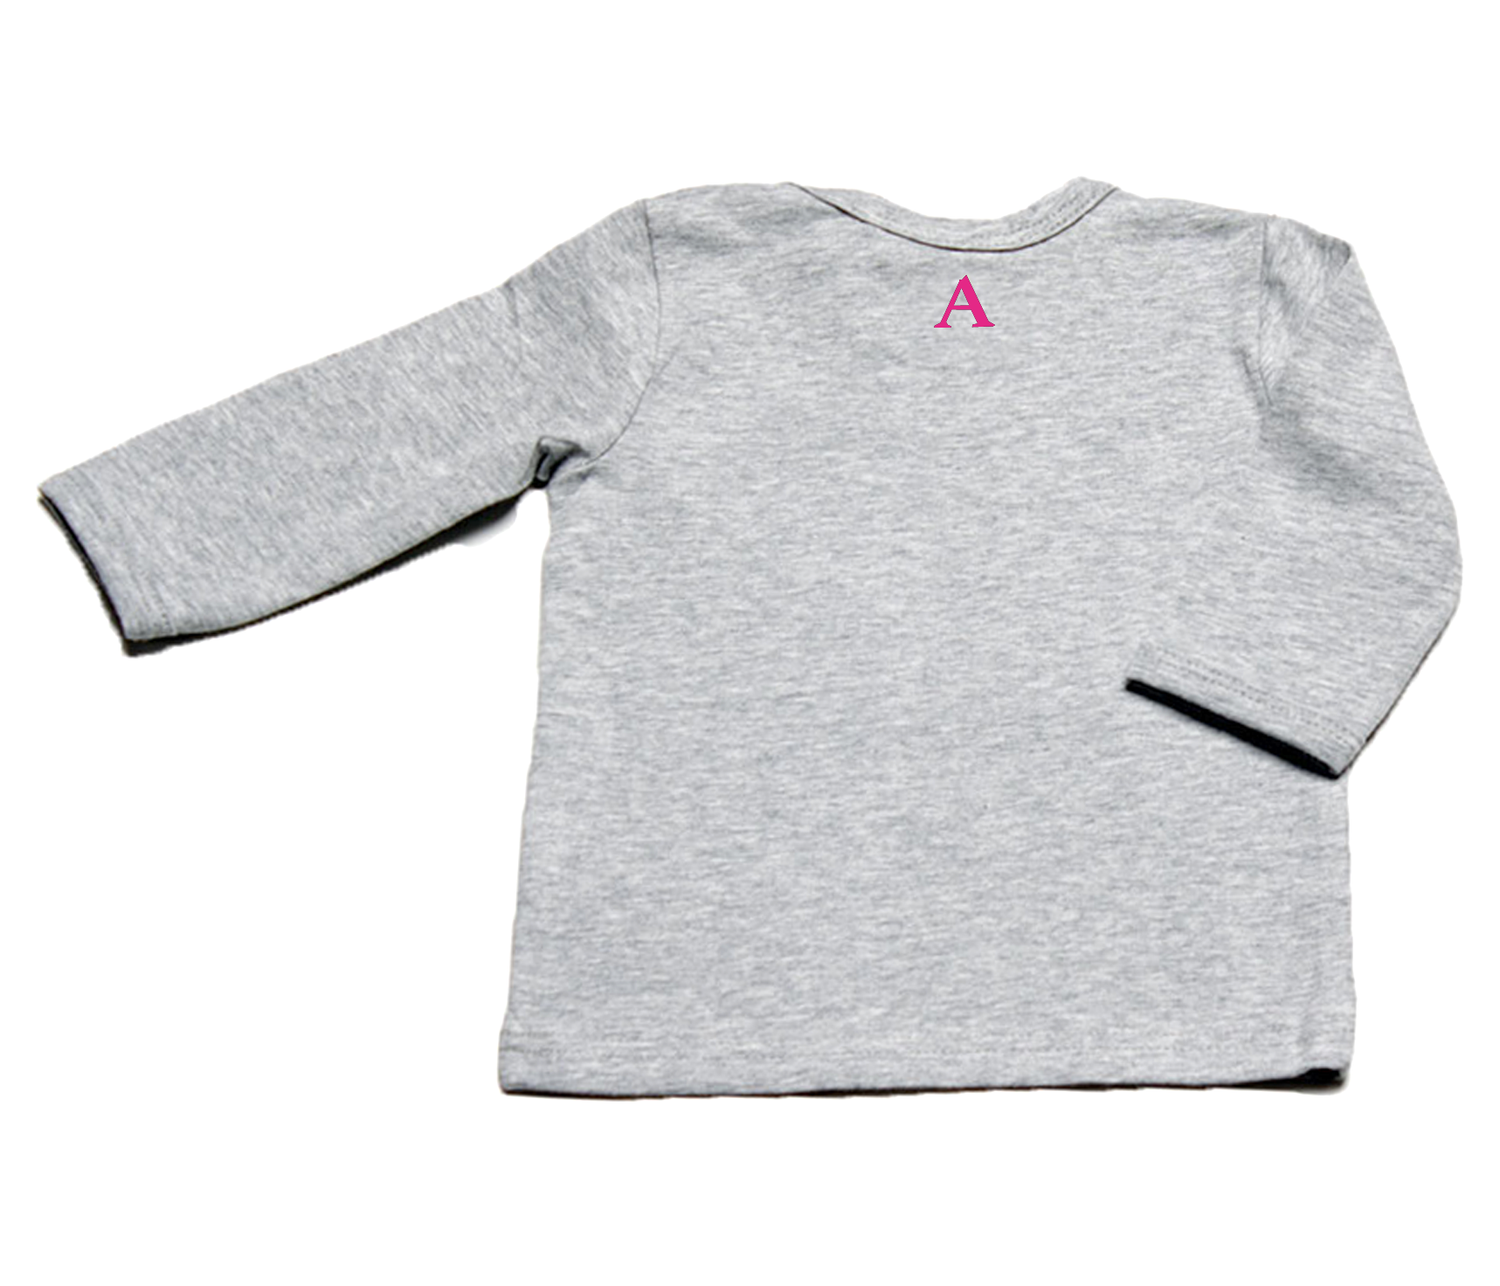 Auryn - Shirt grau Bavarian girl pink - AURYN Shop